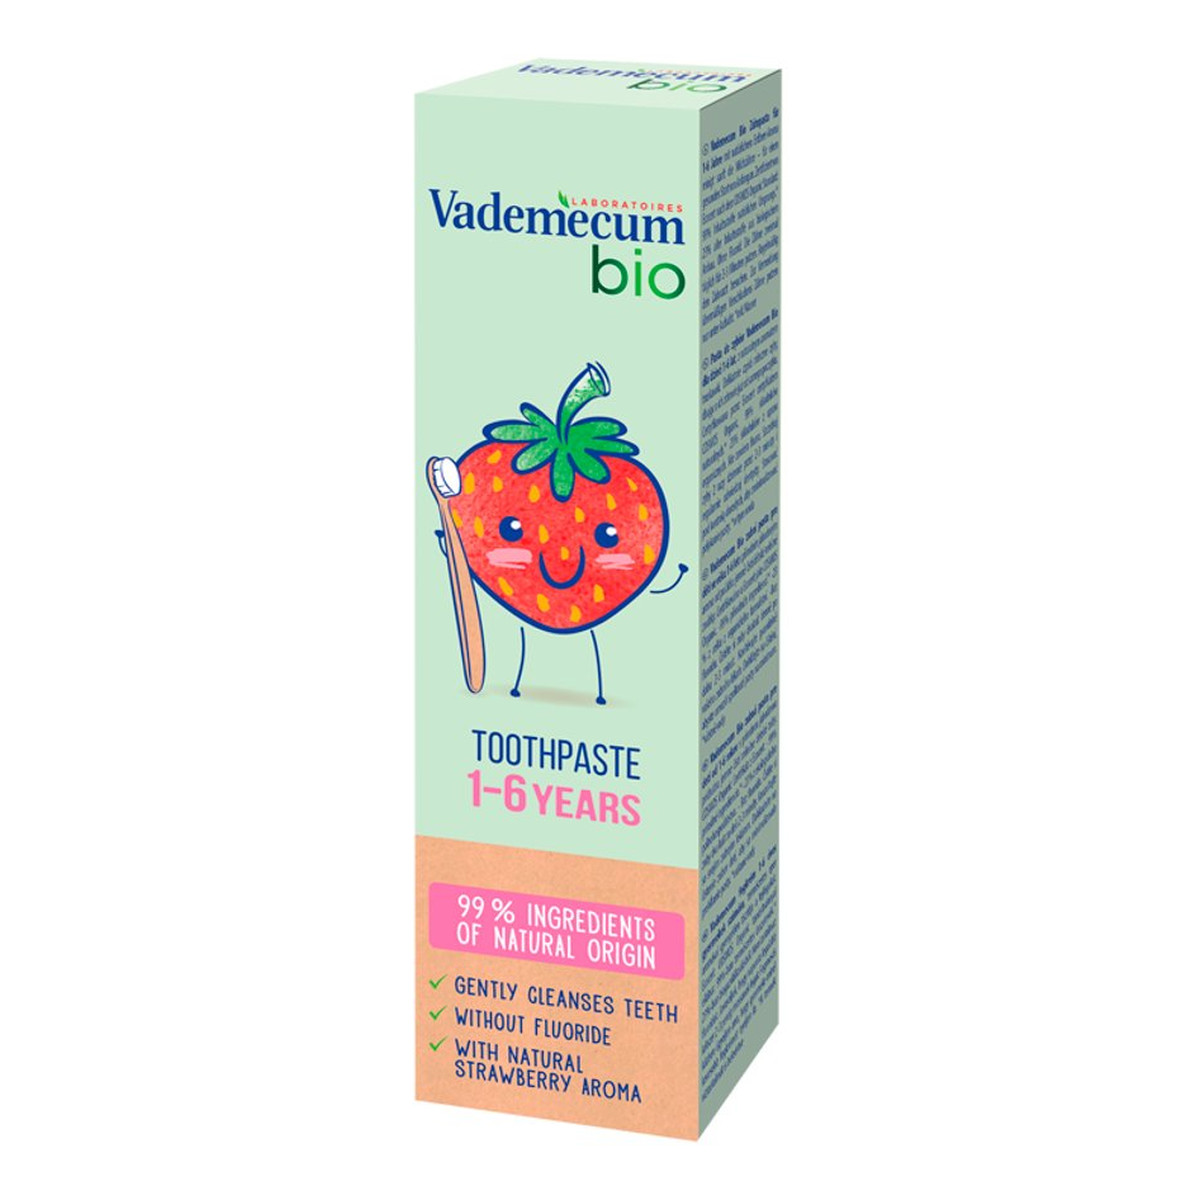 Vademecum Bio kids toothpaste pasta do zębów dla dzieci 1-6 lat z naturalnym aromatem truskawki 50ml